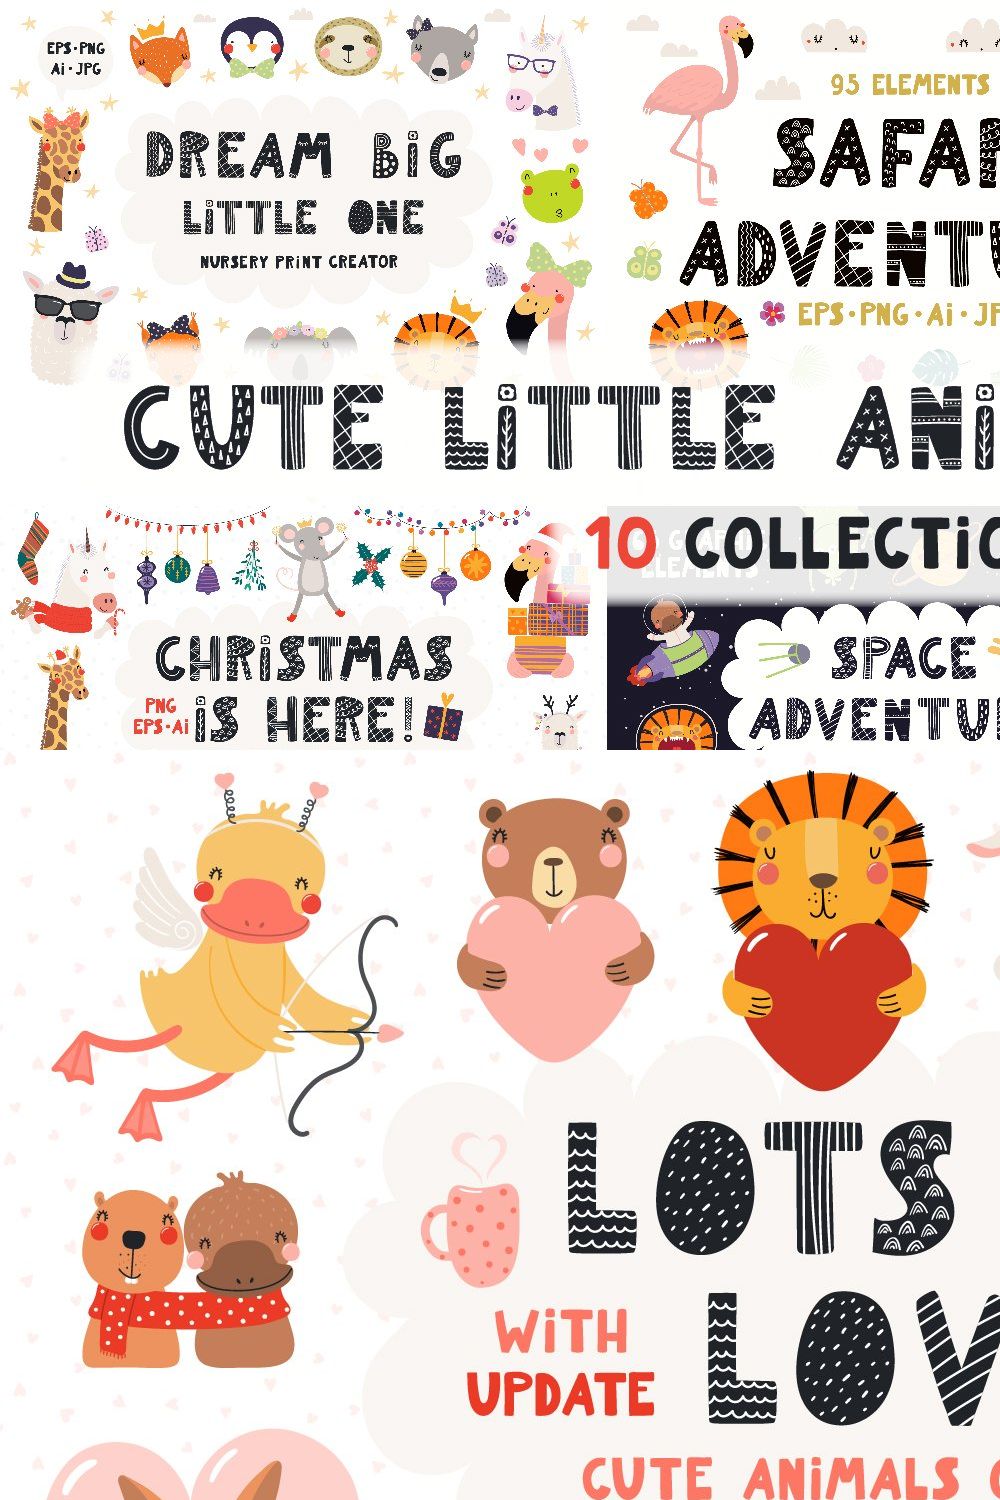 Cute Little Animals Bundle pinterest preview image.